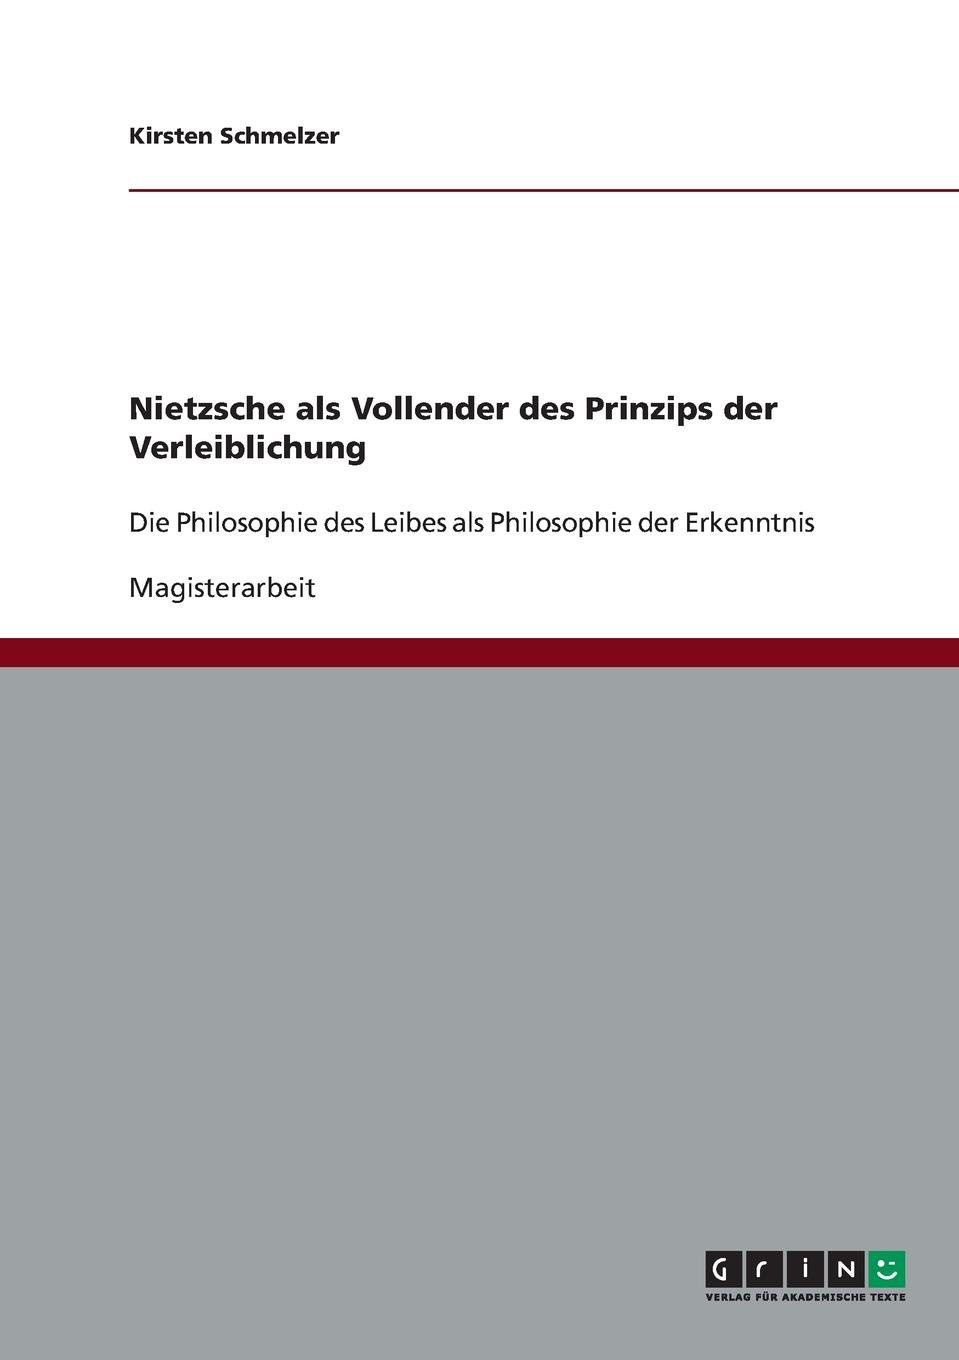 Nietzsche als Vollender des Prinzips der Verleiblichung